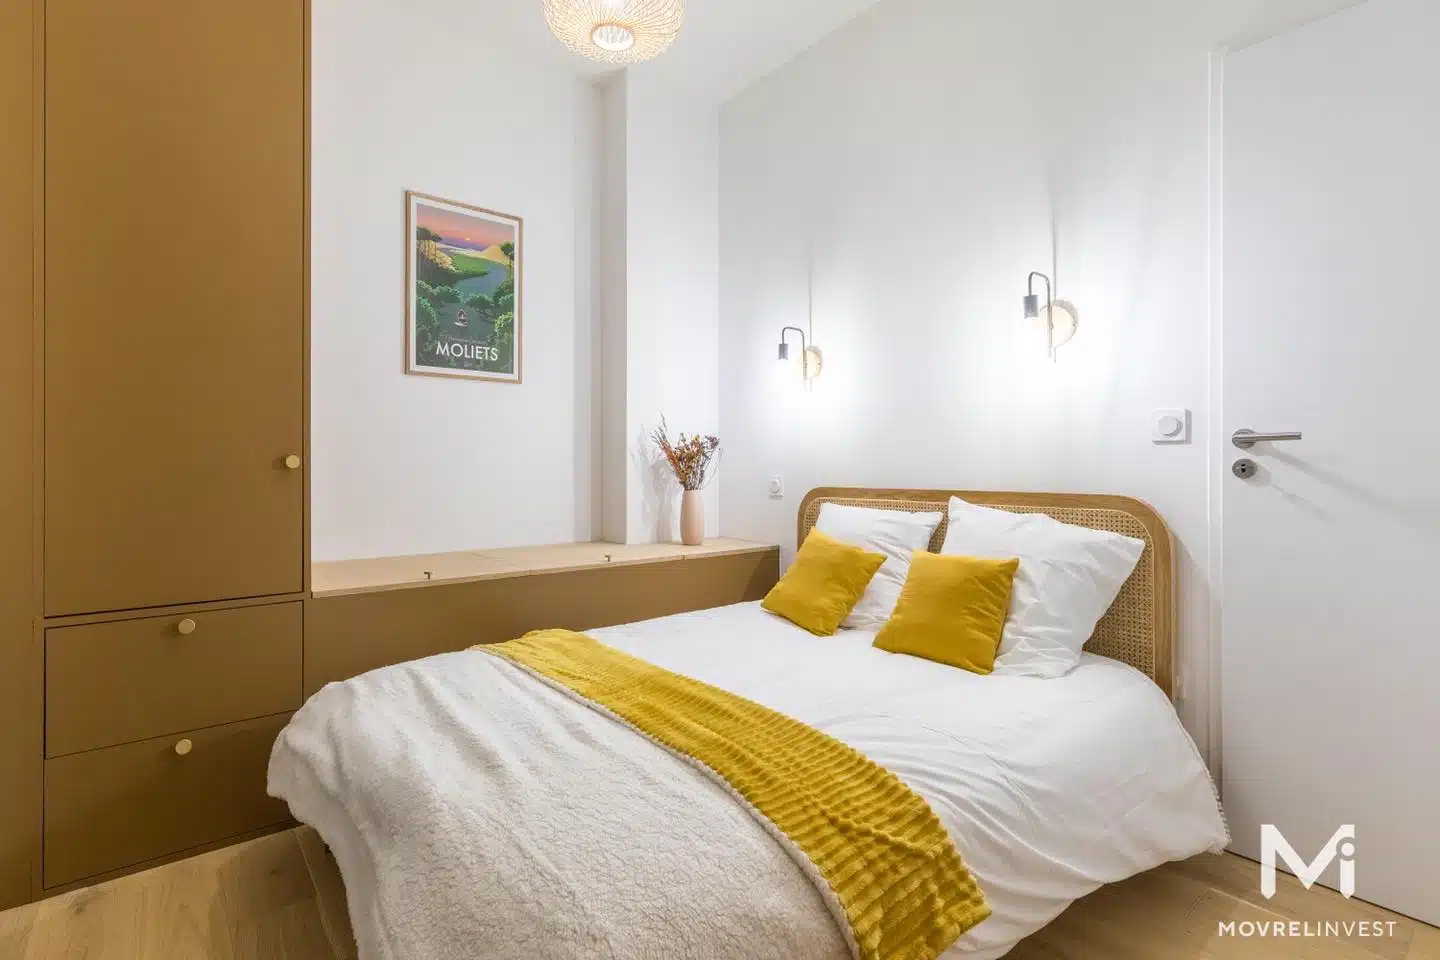 Chambre moderne avec décoration jaune et blanche.